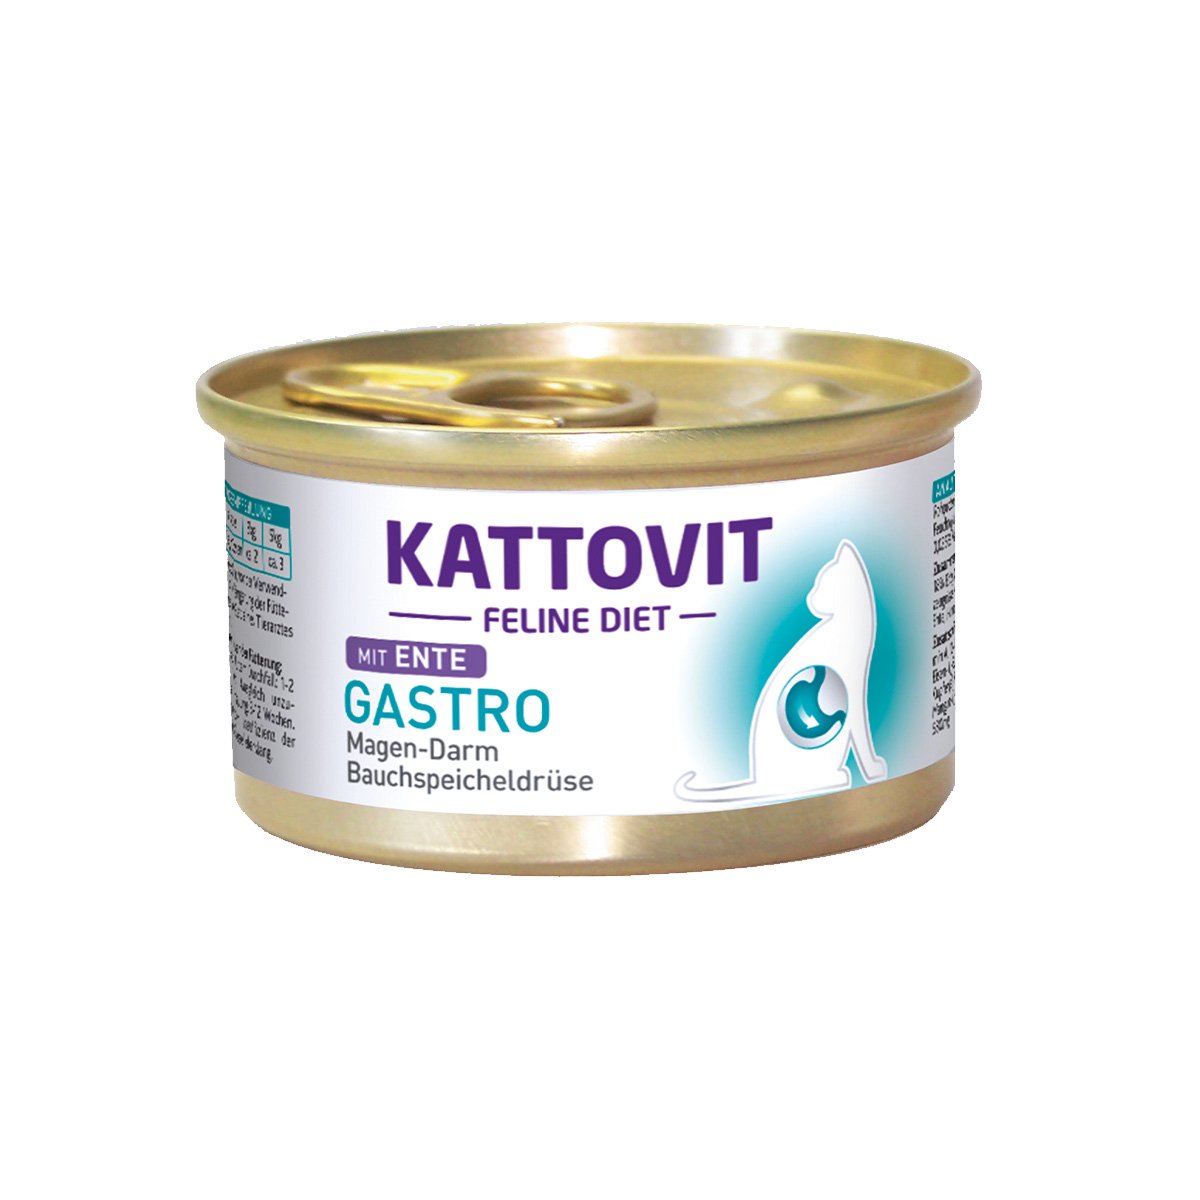 KATTOVIT Feline Diet Gastro Ente 24x85g von Kattovit